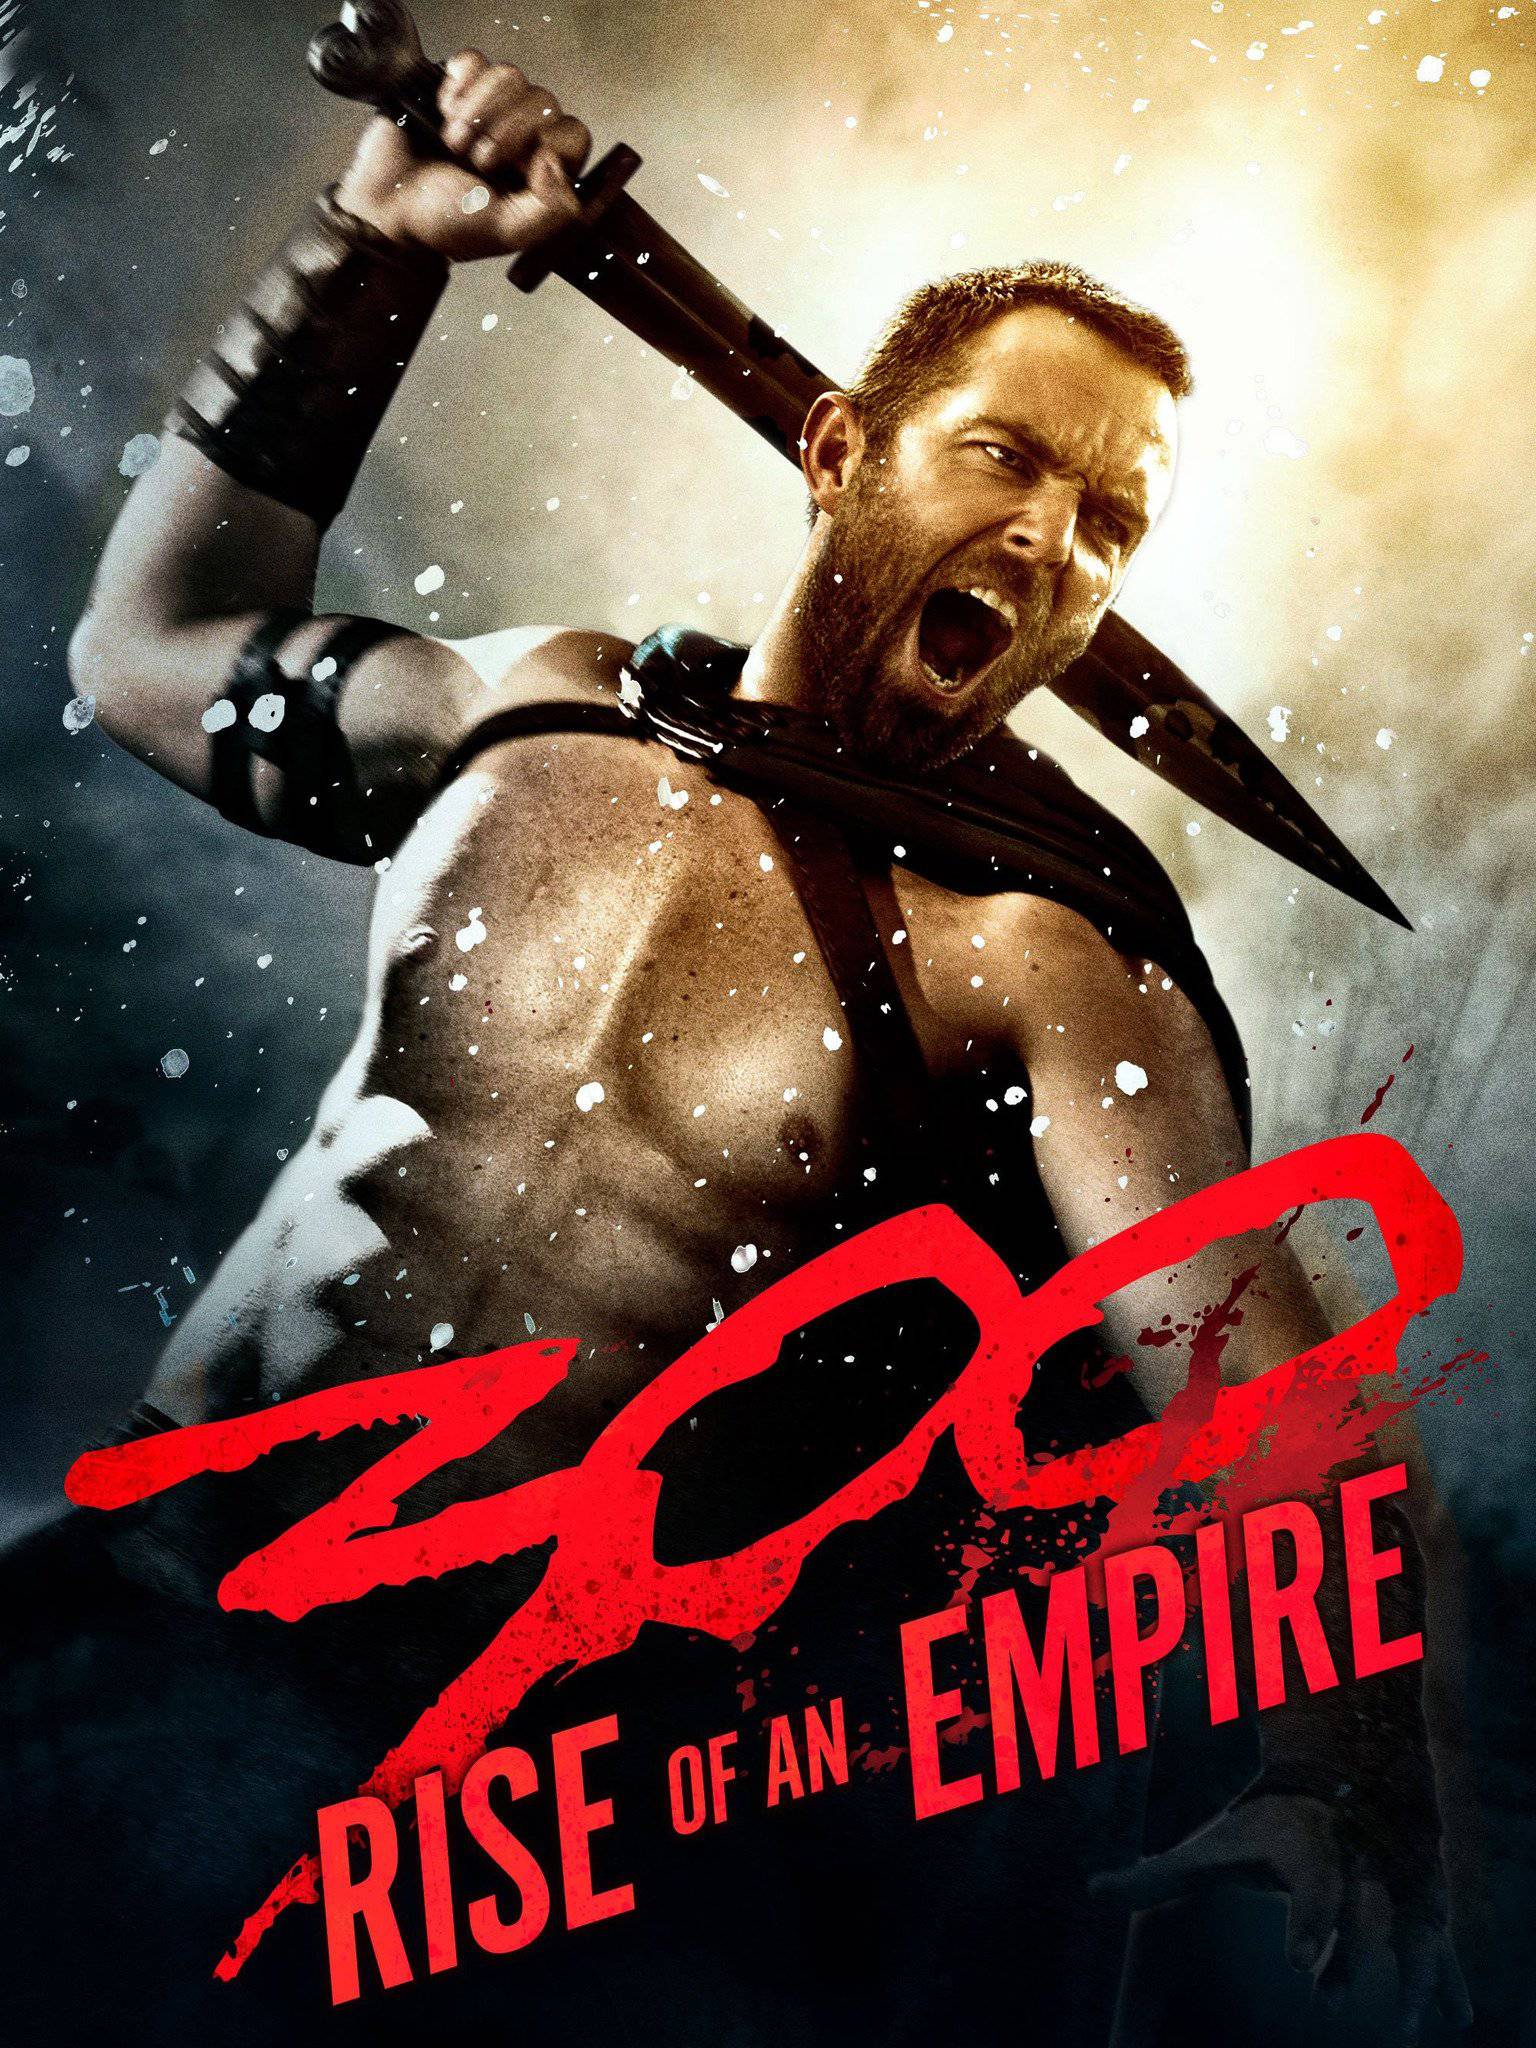 Empire 300 ME